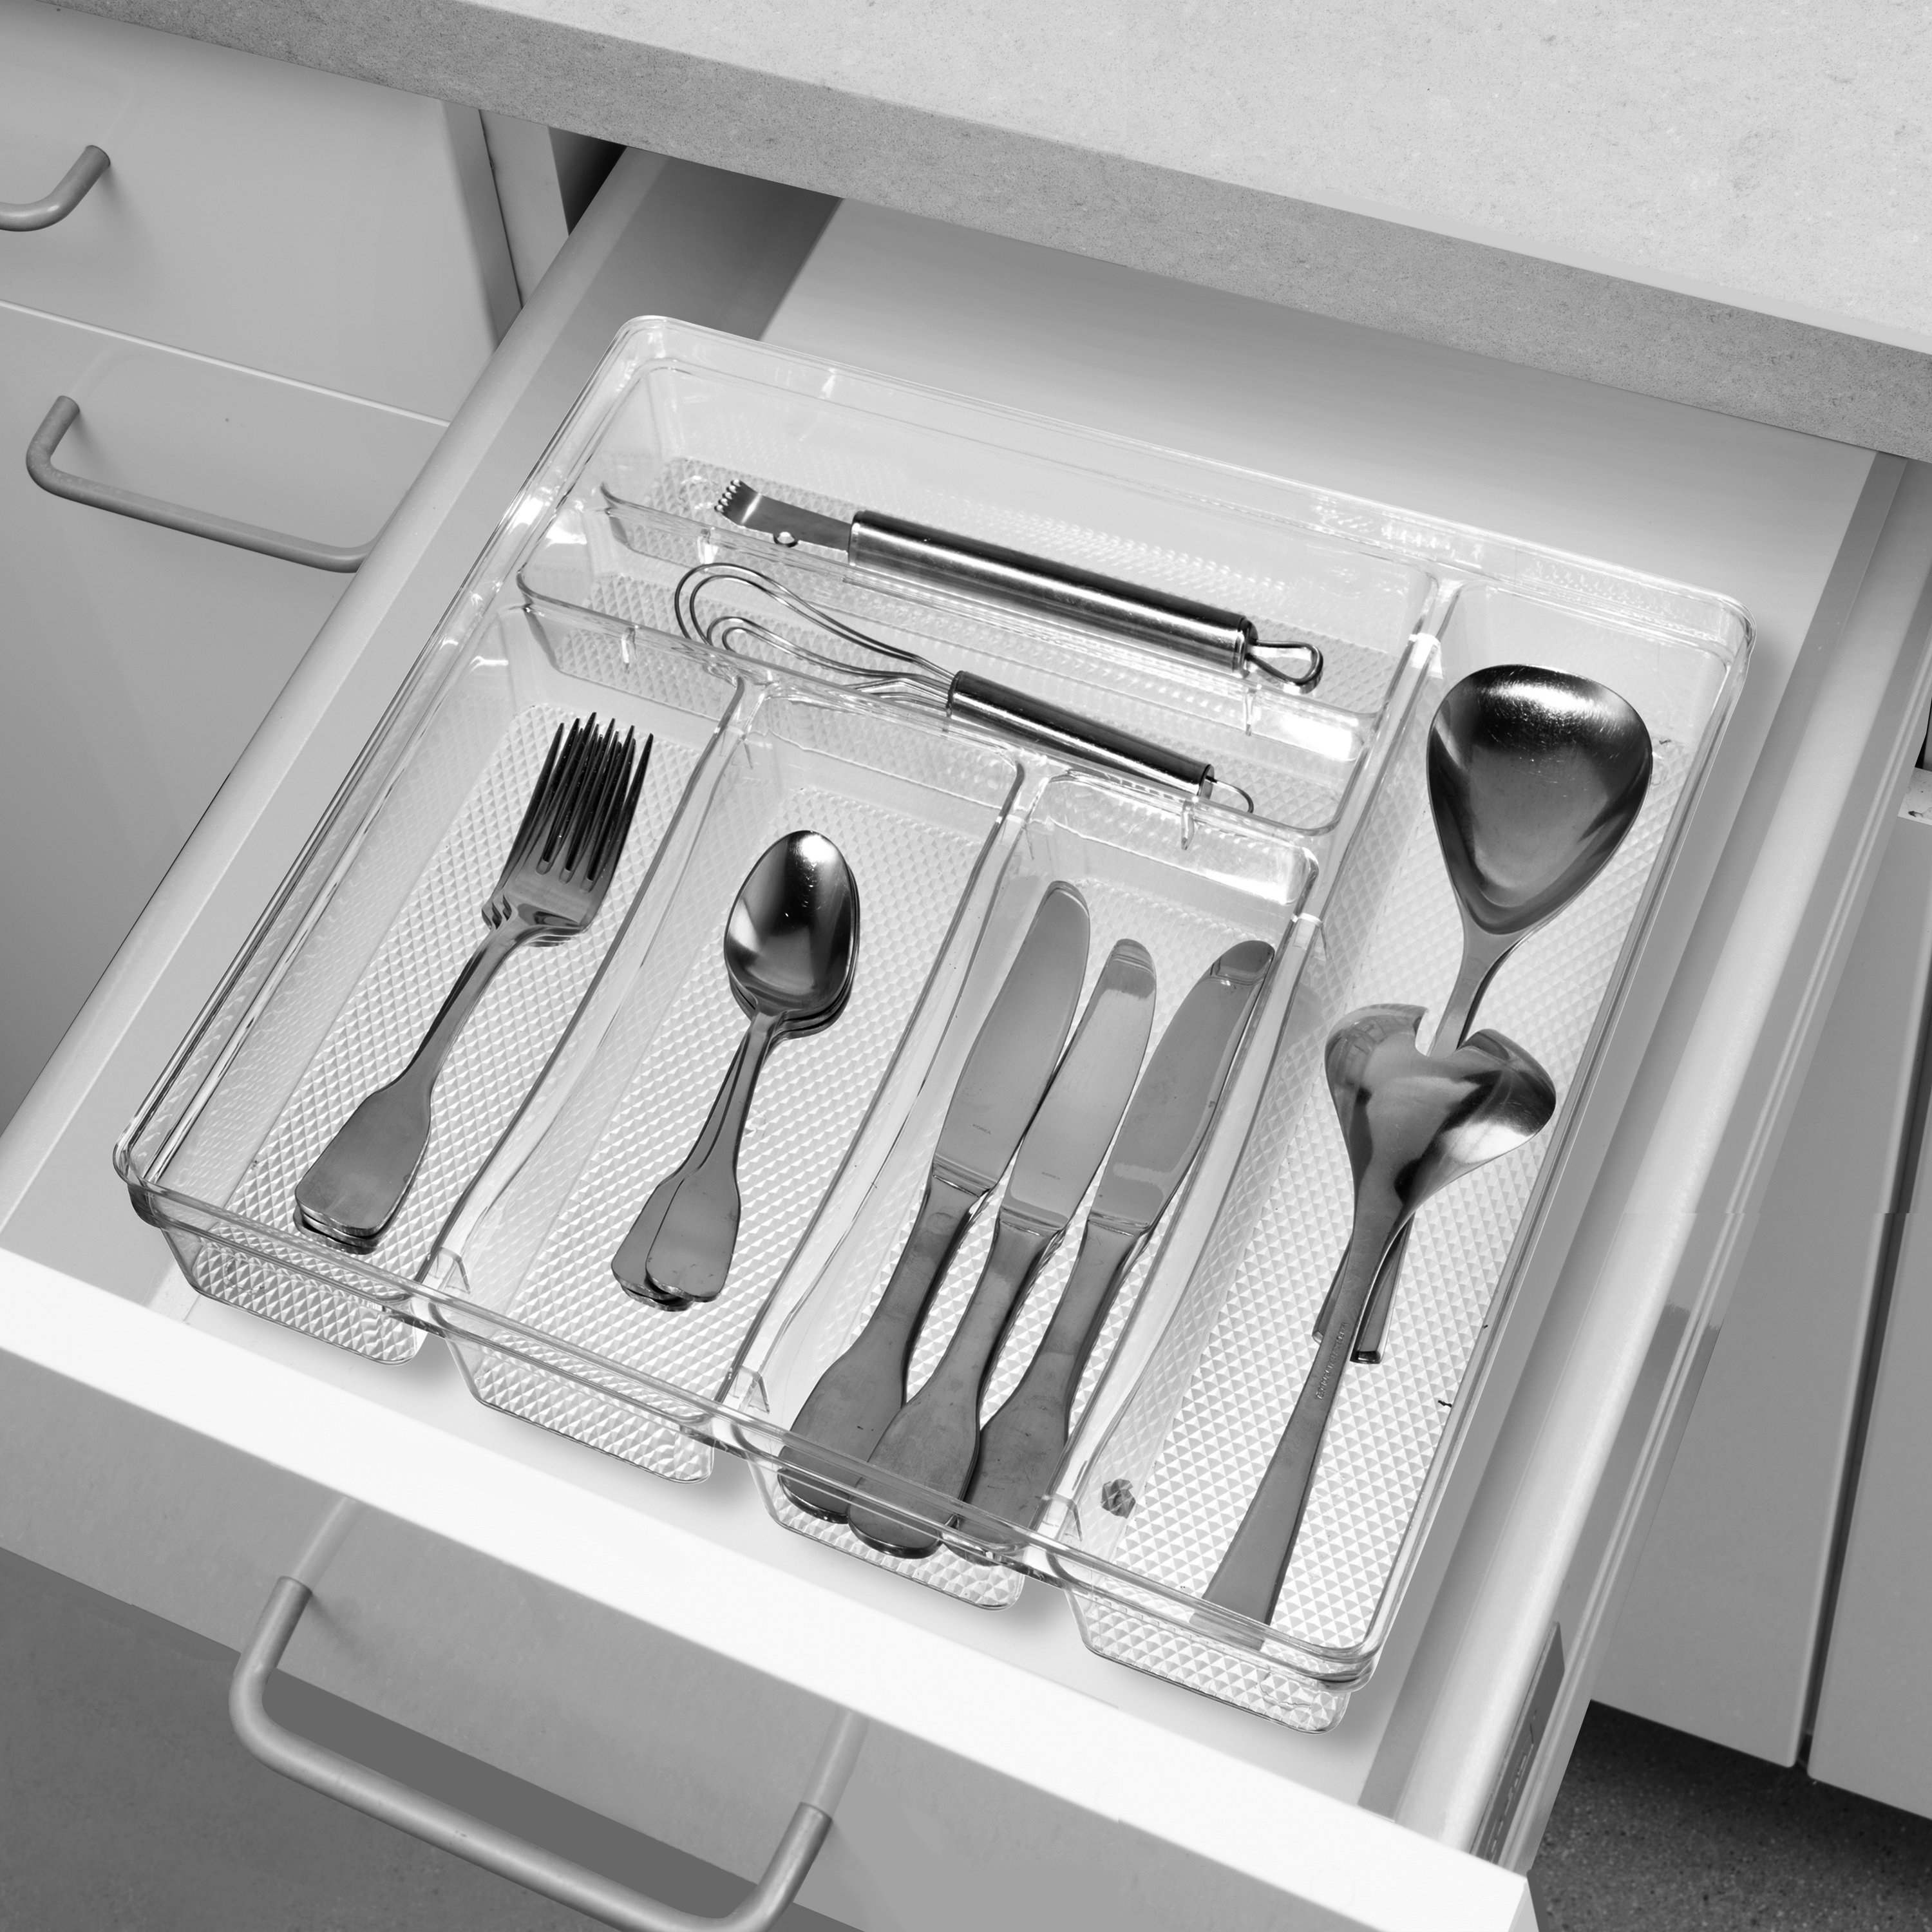 https://assets.wfcdn.com/im/00002459/compr-r85/2403/240328187/oggi-neat-2-h-x-115-w-x-1325-d-flatware-kitchen-utensils-drawer-organizer.jpg